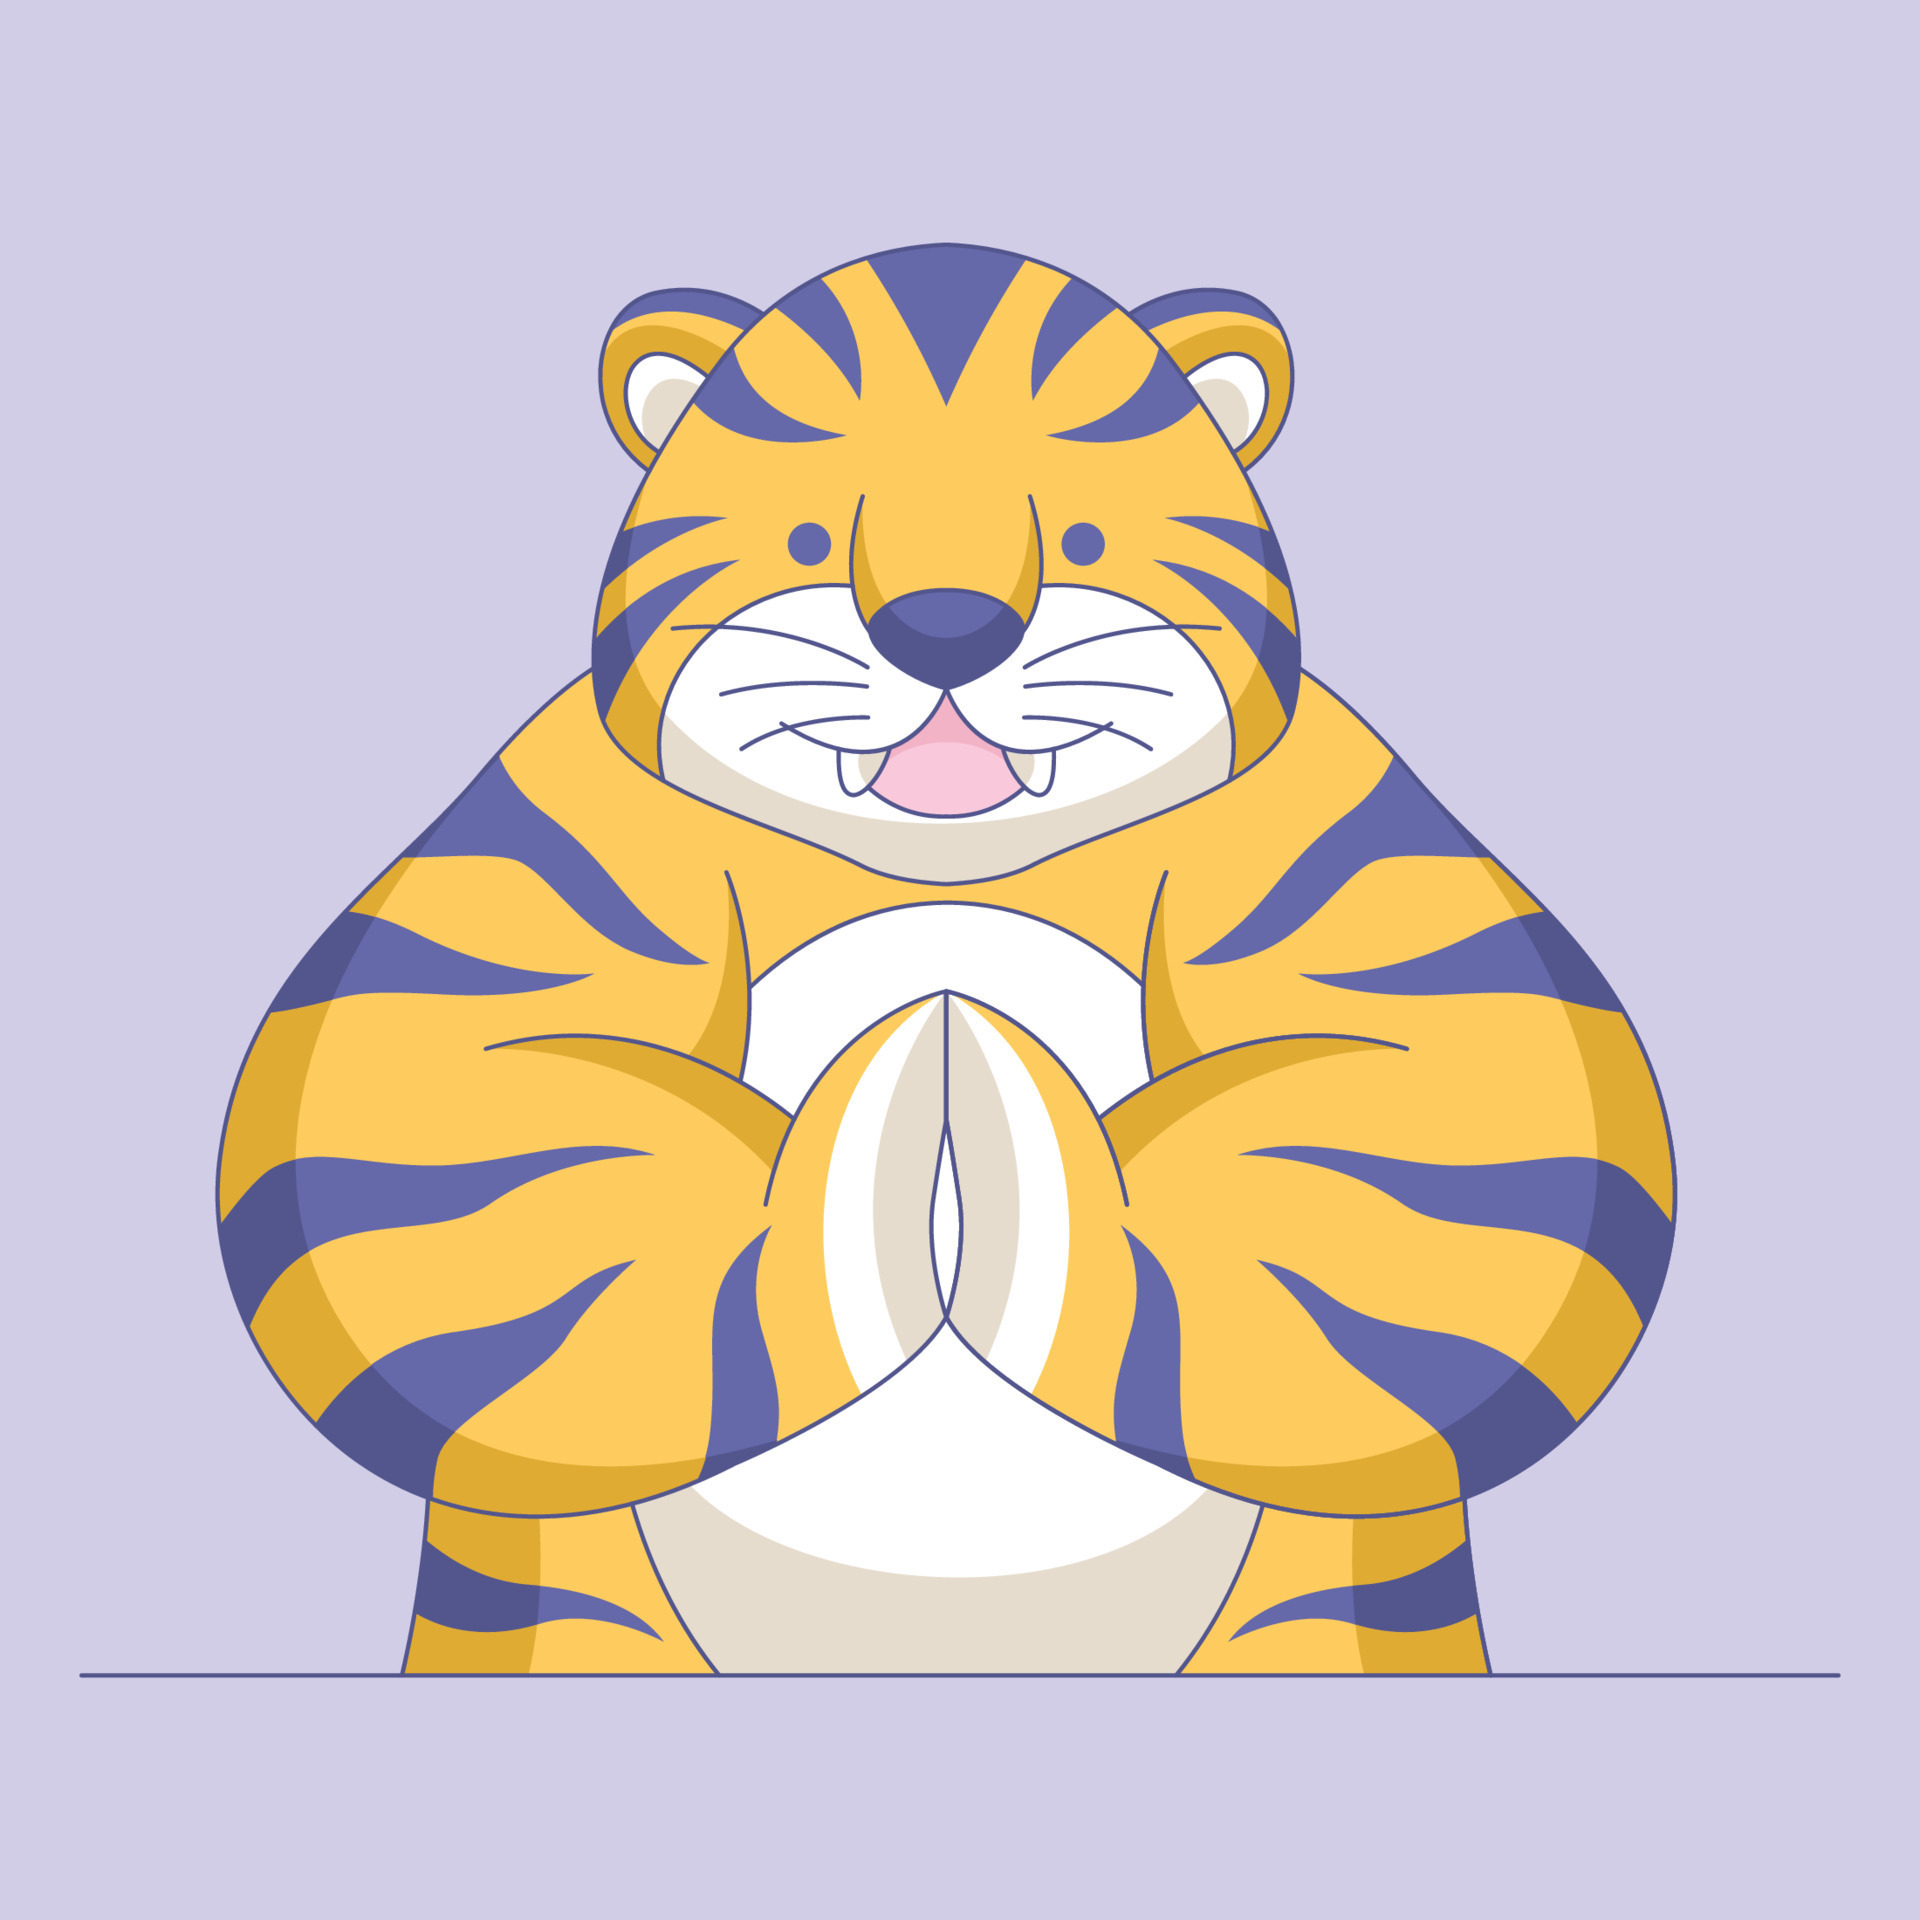 Cute tiger cartoon logo vector illustration 12000929 Vector Art at Vecteezy